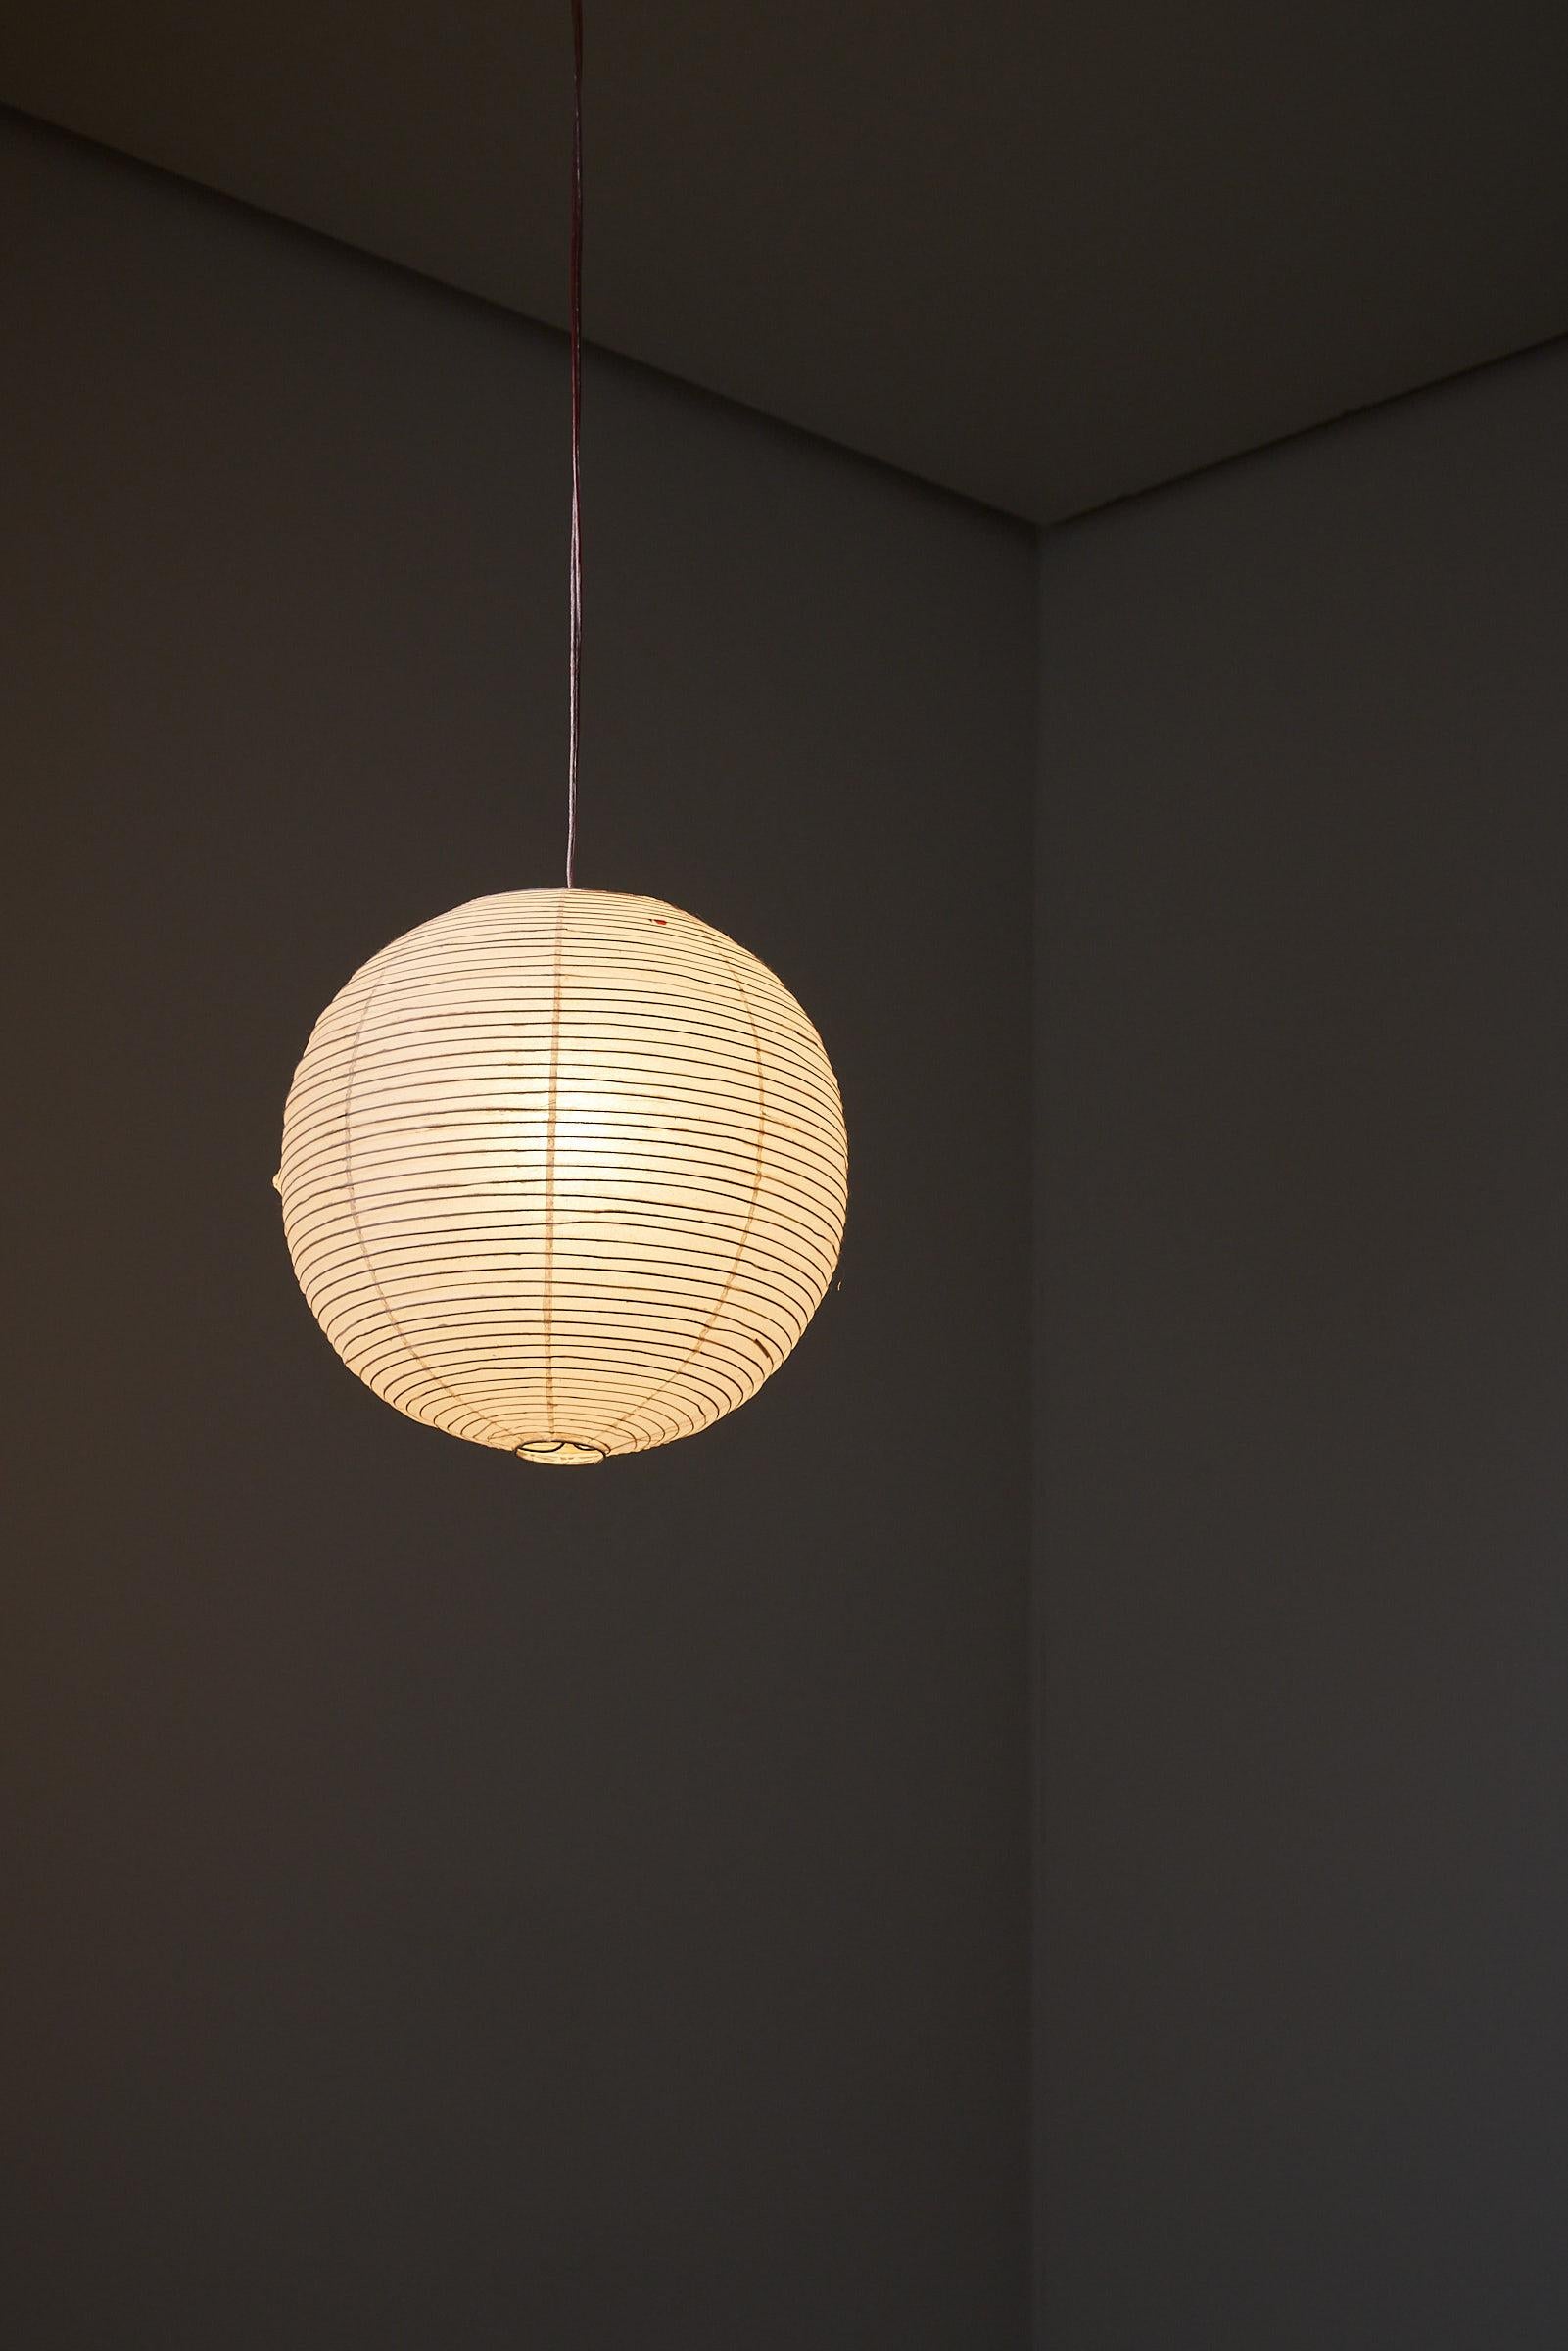 Die Akari-Lichtskulptur Modell 30A von Isamu Noguchi ist ein seltenes Schmuckstück aus dem Jahr 1951, das in der renommierten Ozeki-Fabrik sorgfältig hergestellt wurde. Dieses Werk ist eine der frühesten Produktionen von Noguchis ikonischen